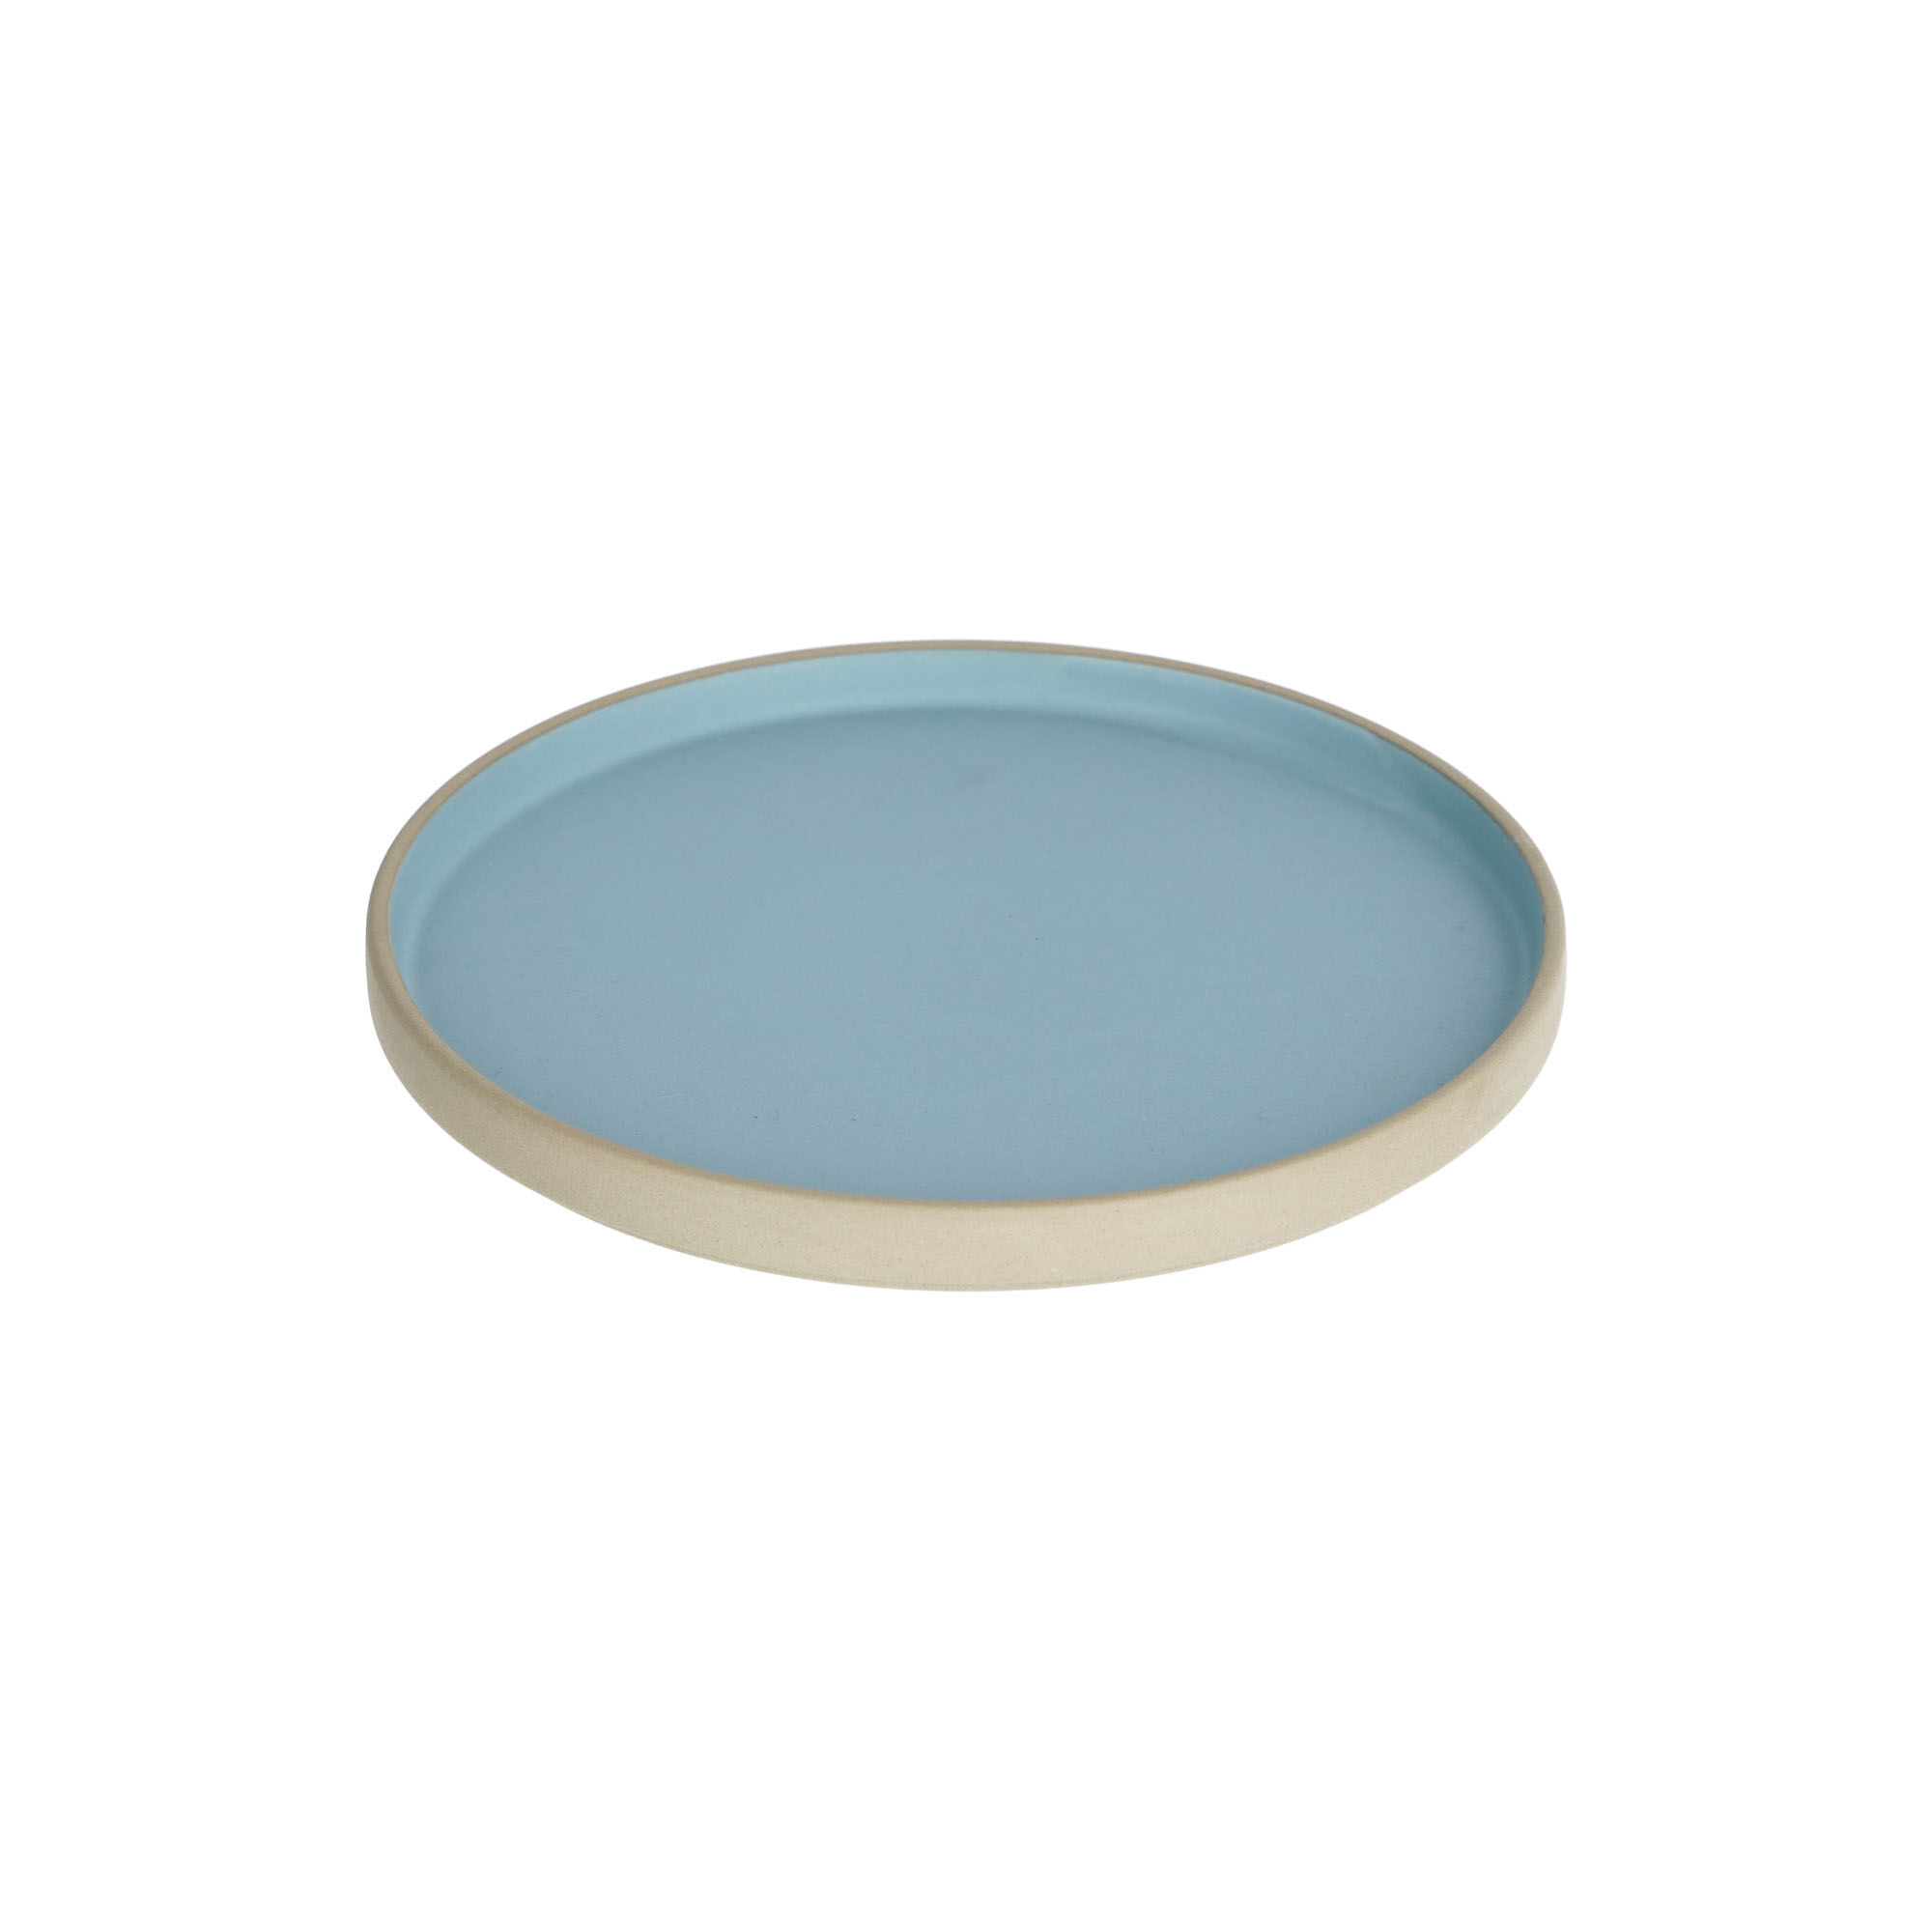 Kave Home Midori ceramic dessert plate in blue